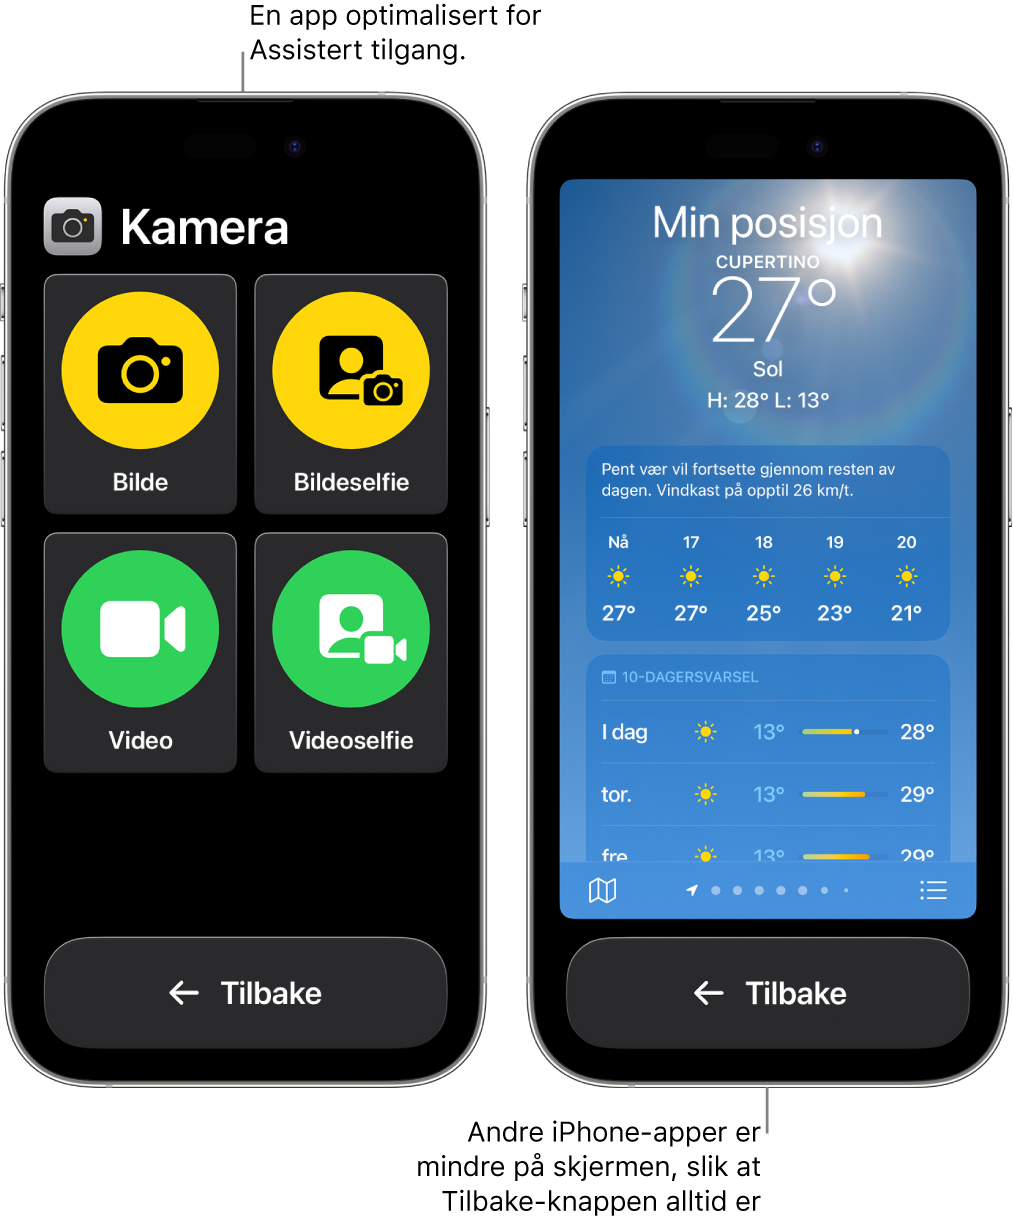 To iPhoner i Assistert tilgang. Én iPhone viser en app som er utviklet for Assistert tilgang, med et stort rutenett med knapper. Den andre iPhonen viser en app som ikke er utviklet for Assistert tilgang, og som er i sin opprinnelige design. Appen er mindre på skjermen, med en stor Tilbake-knapp nederst.